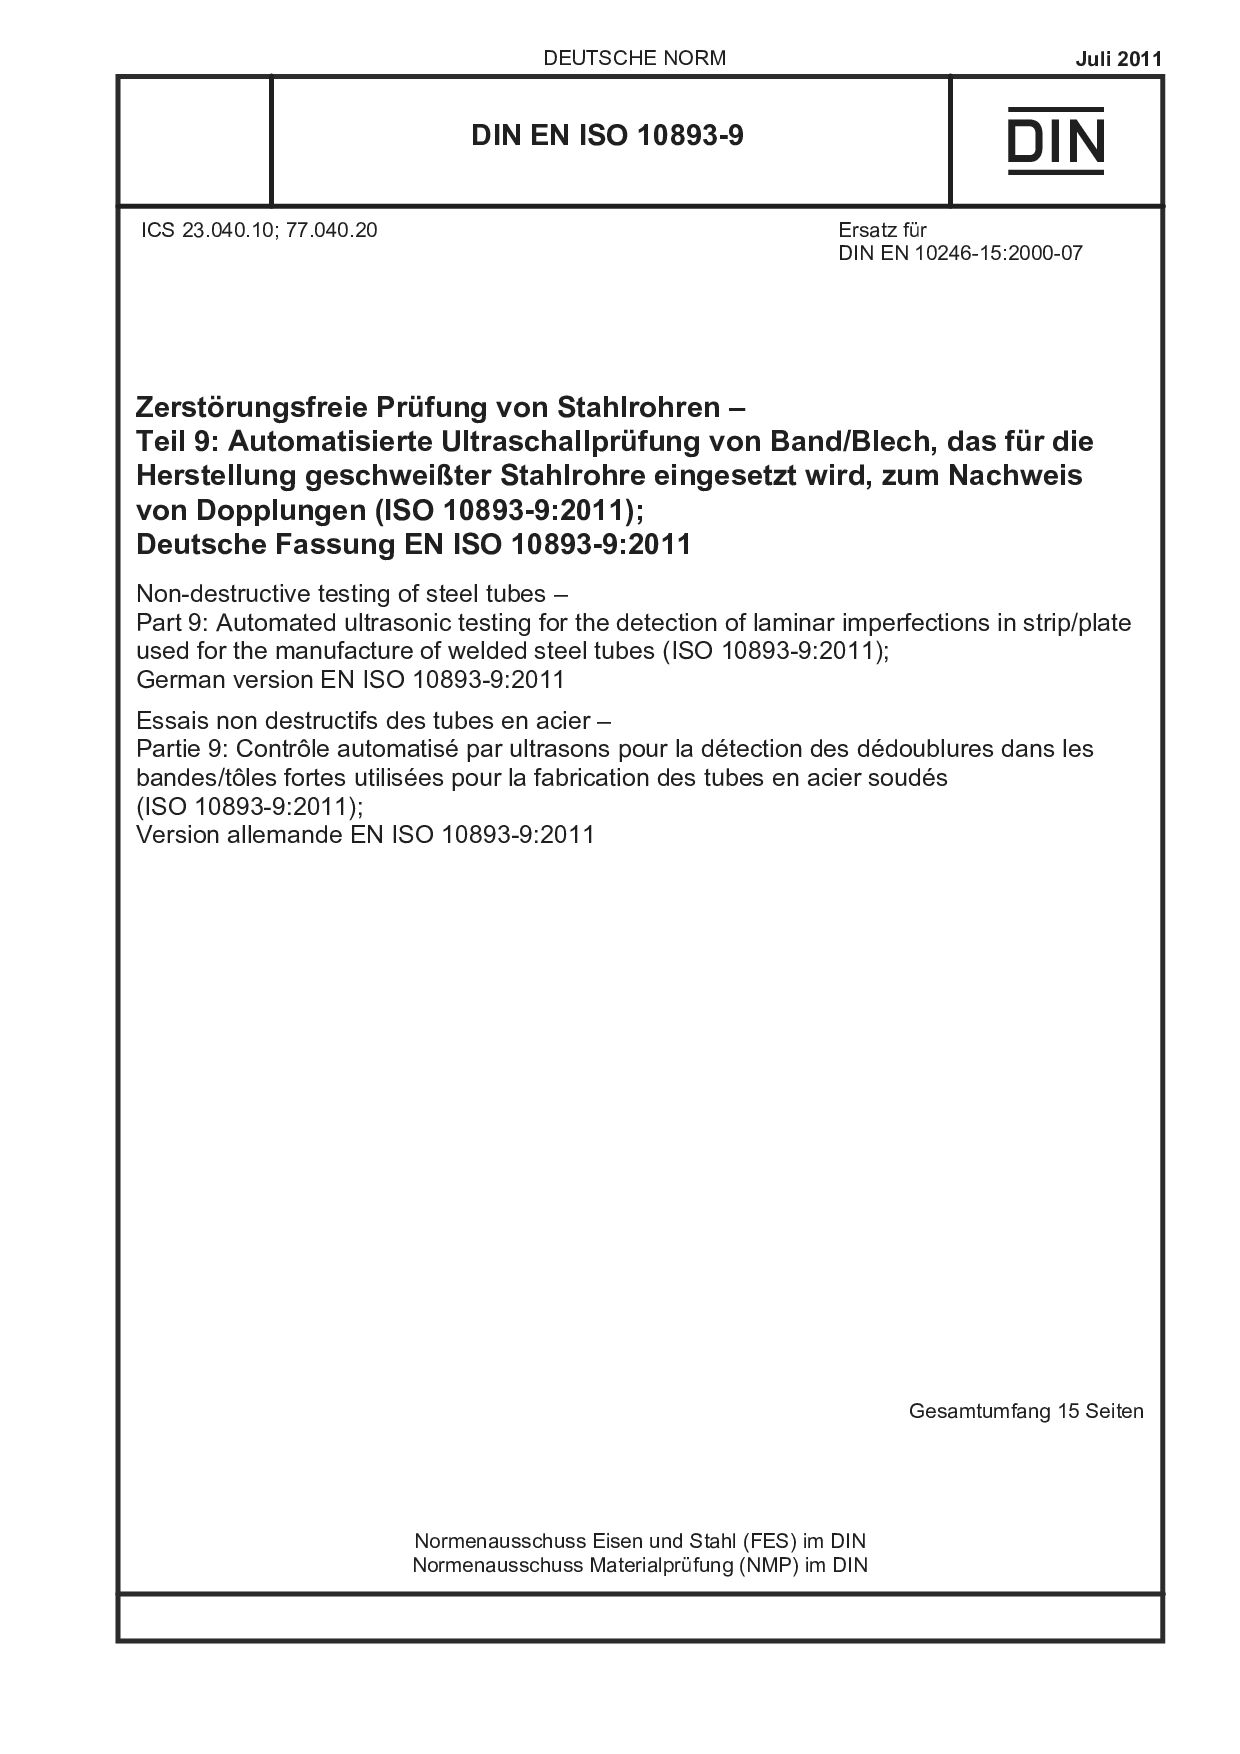 DIN EN ISO 10893-9:2011